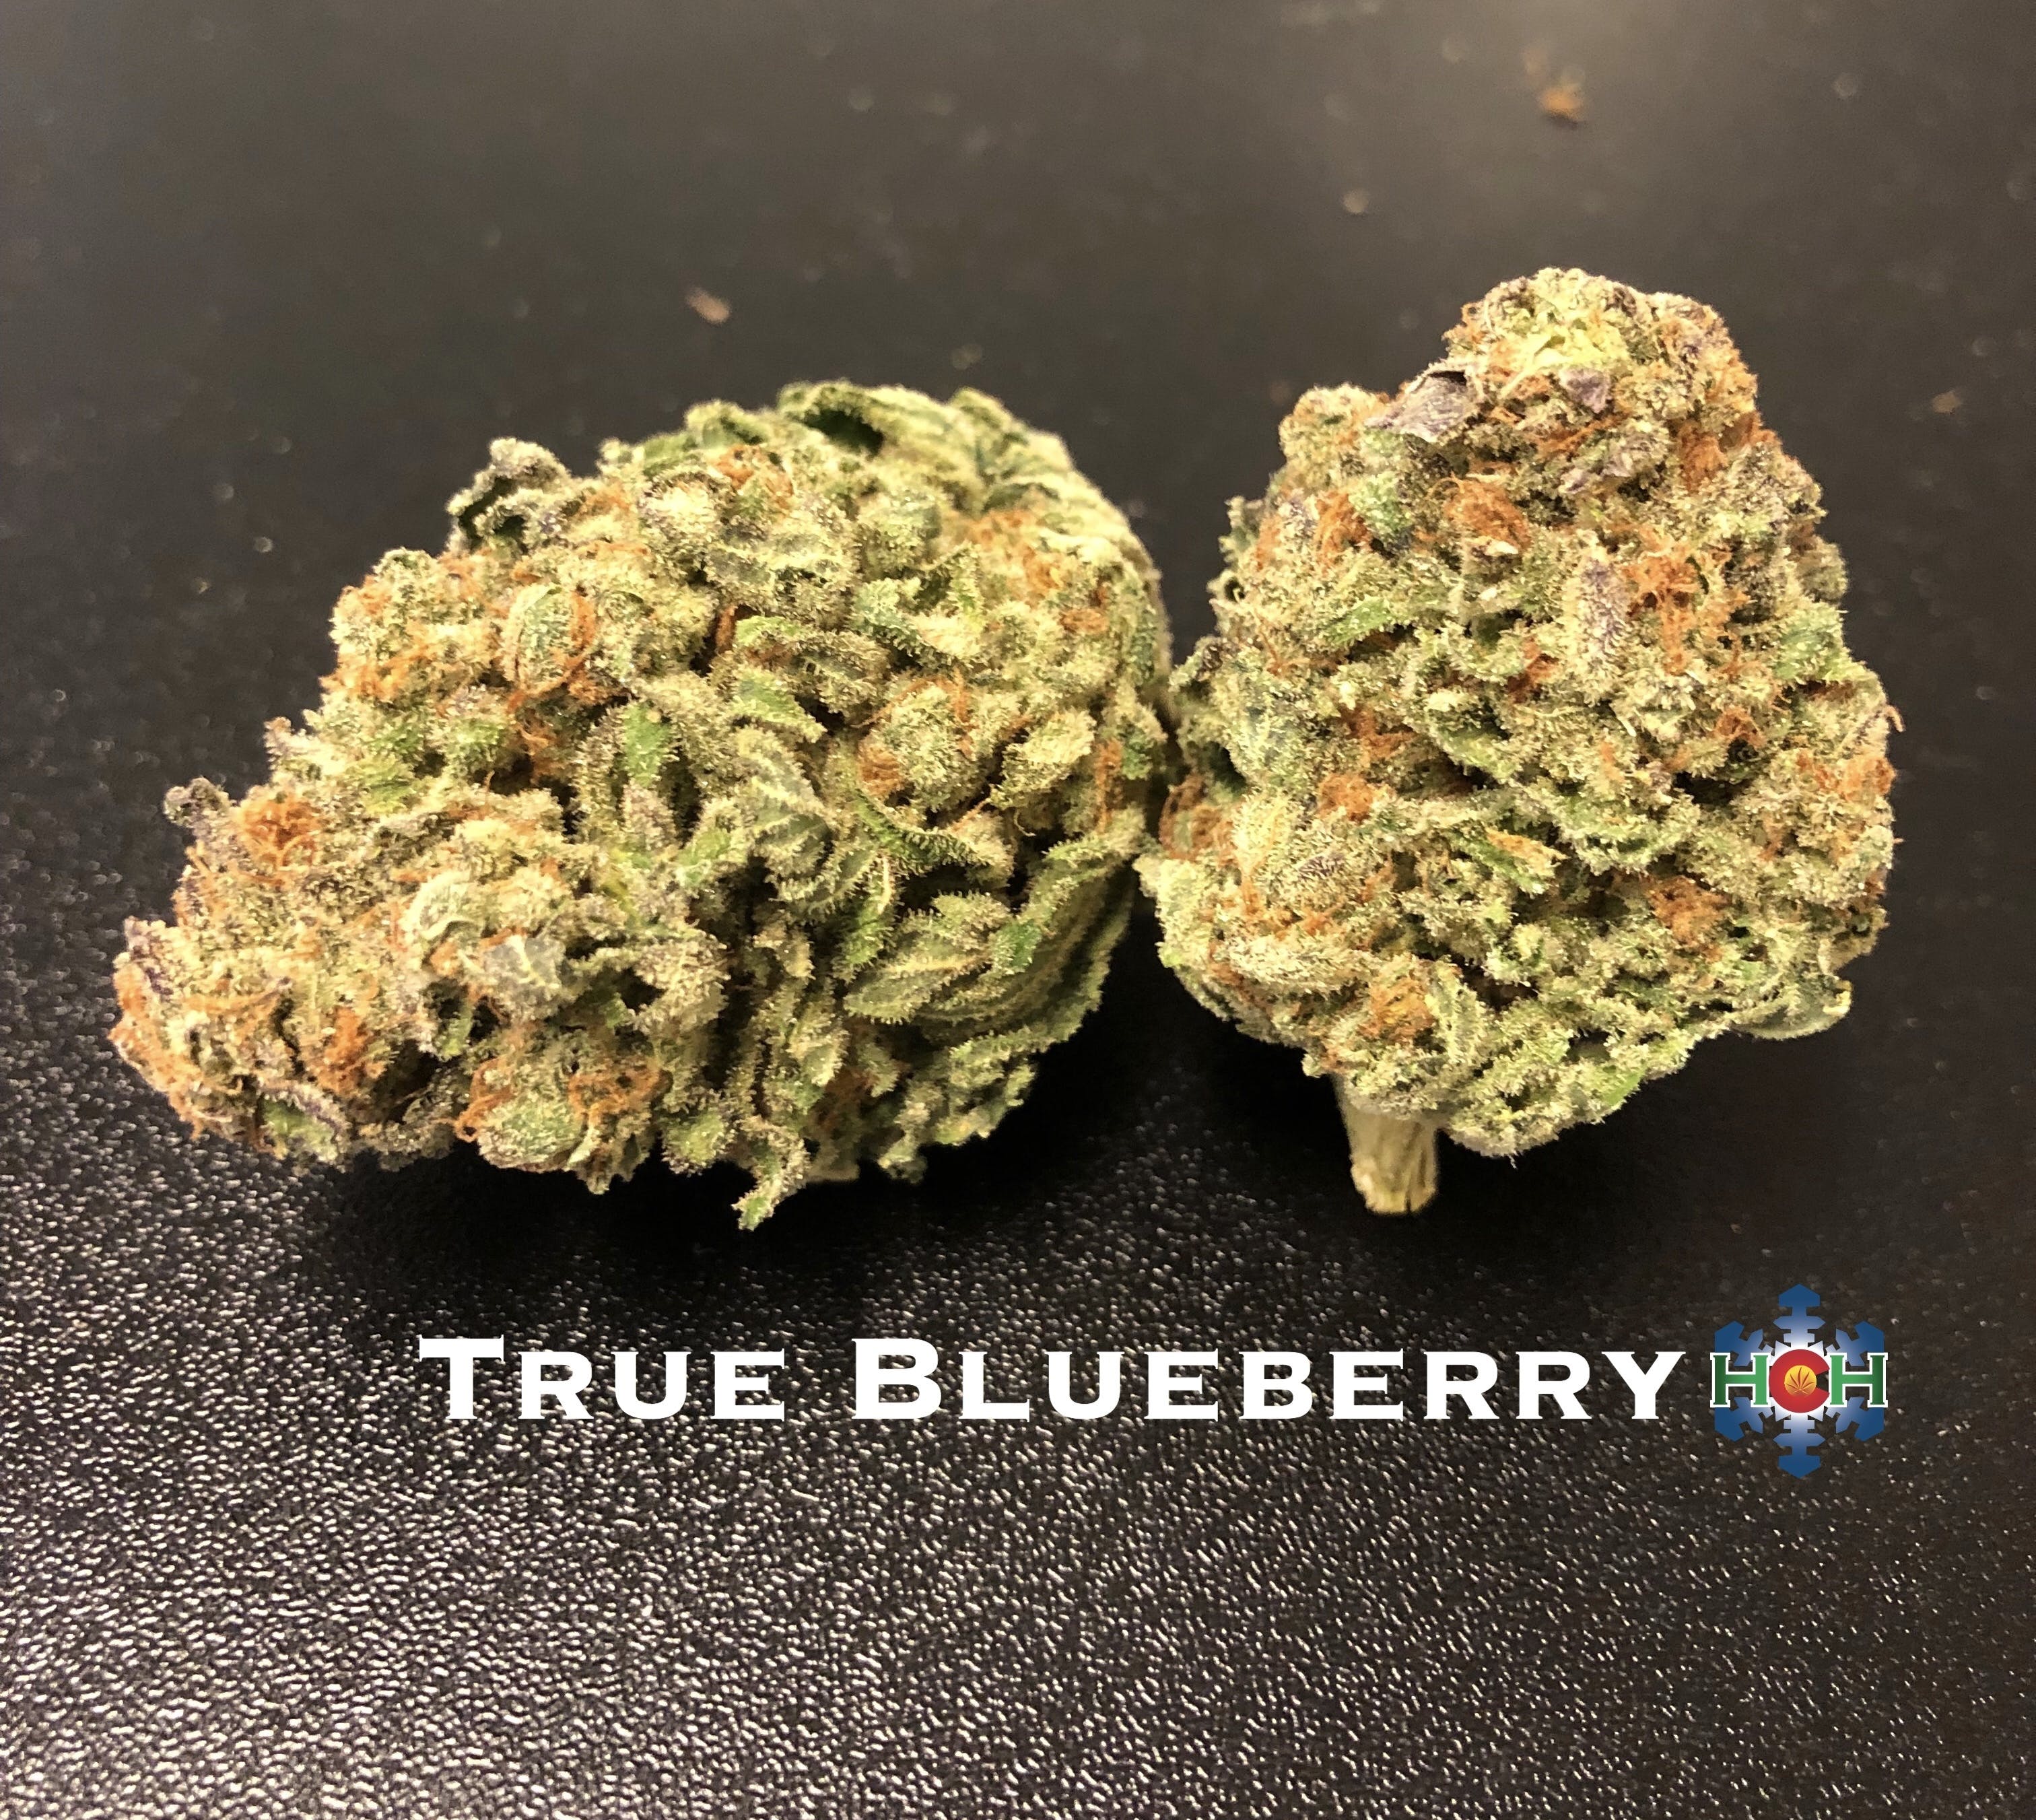 marijuana-dispensaries-1330-w-garden-of-the-gods-rd-colorado-springs-dj-short-true-blueberry